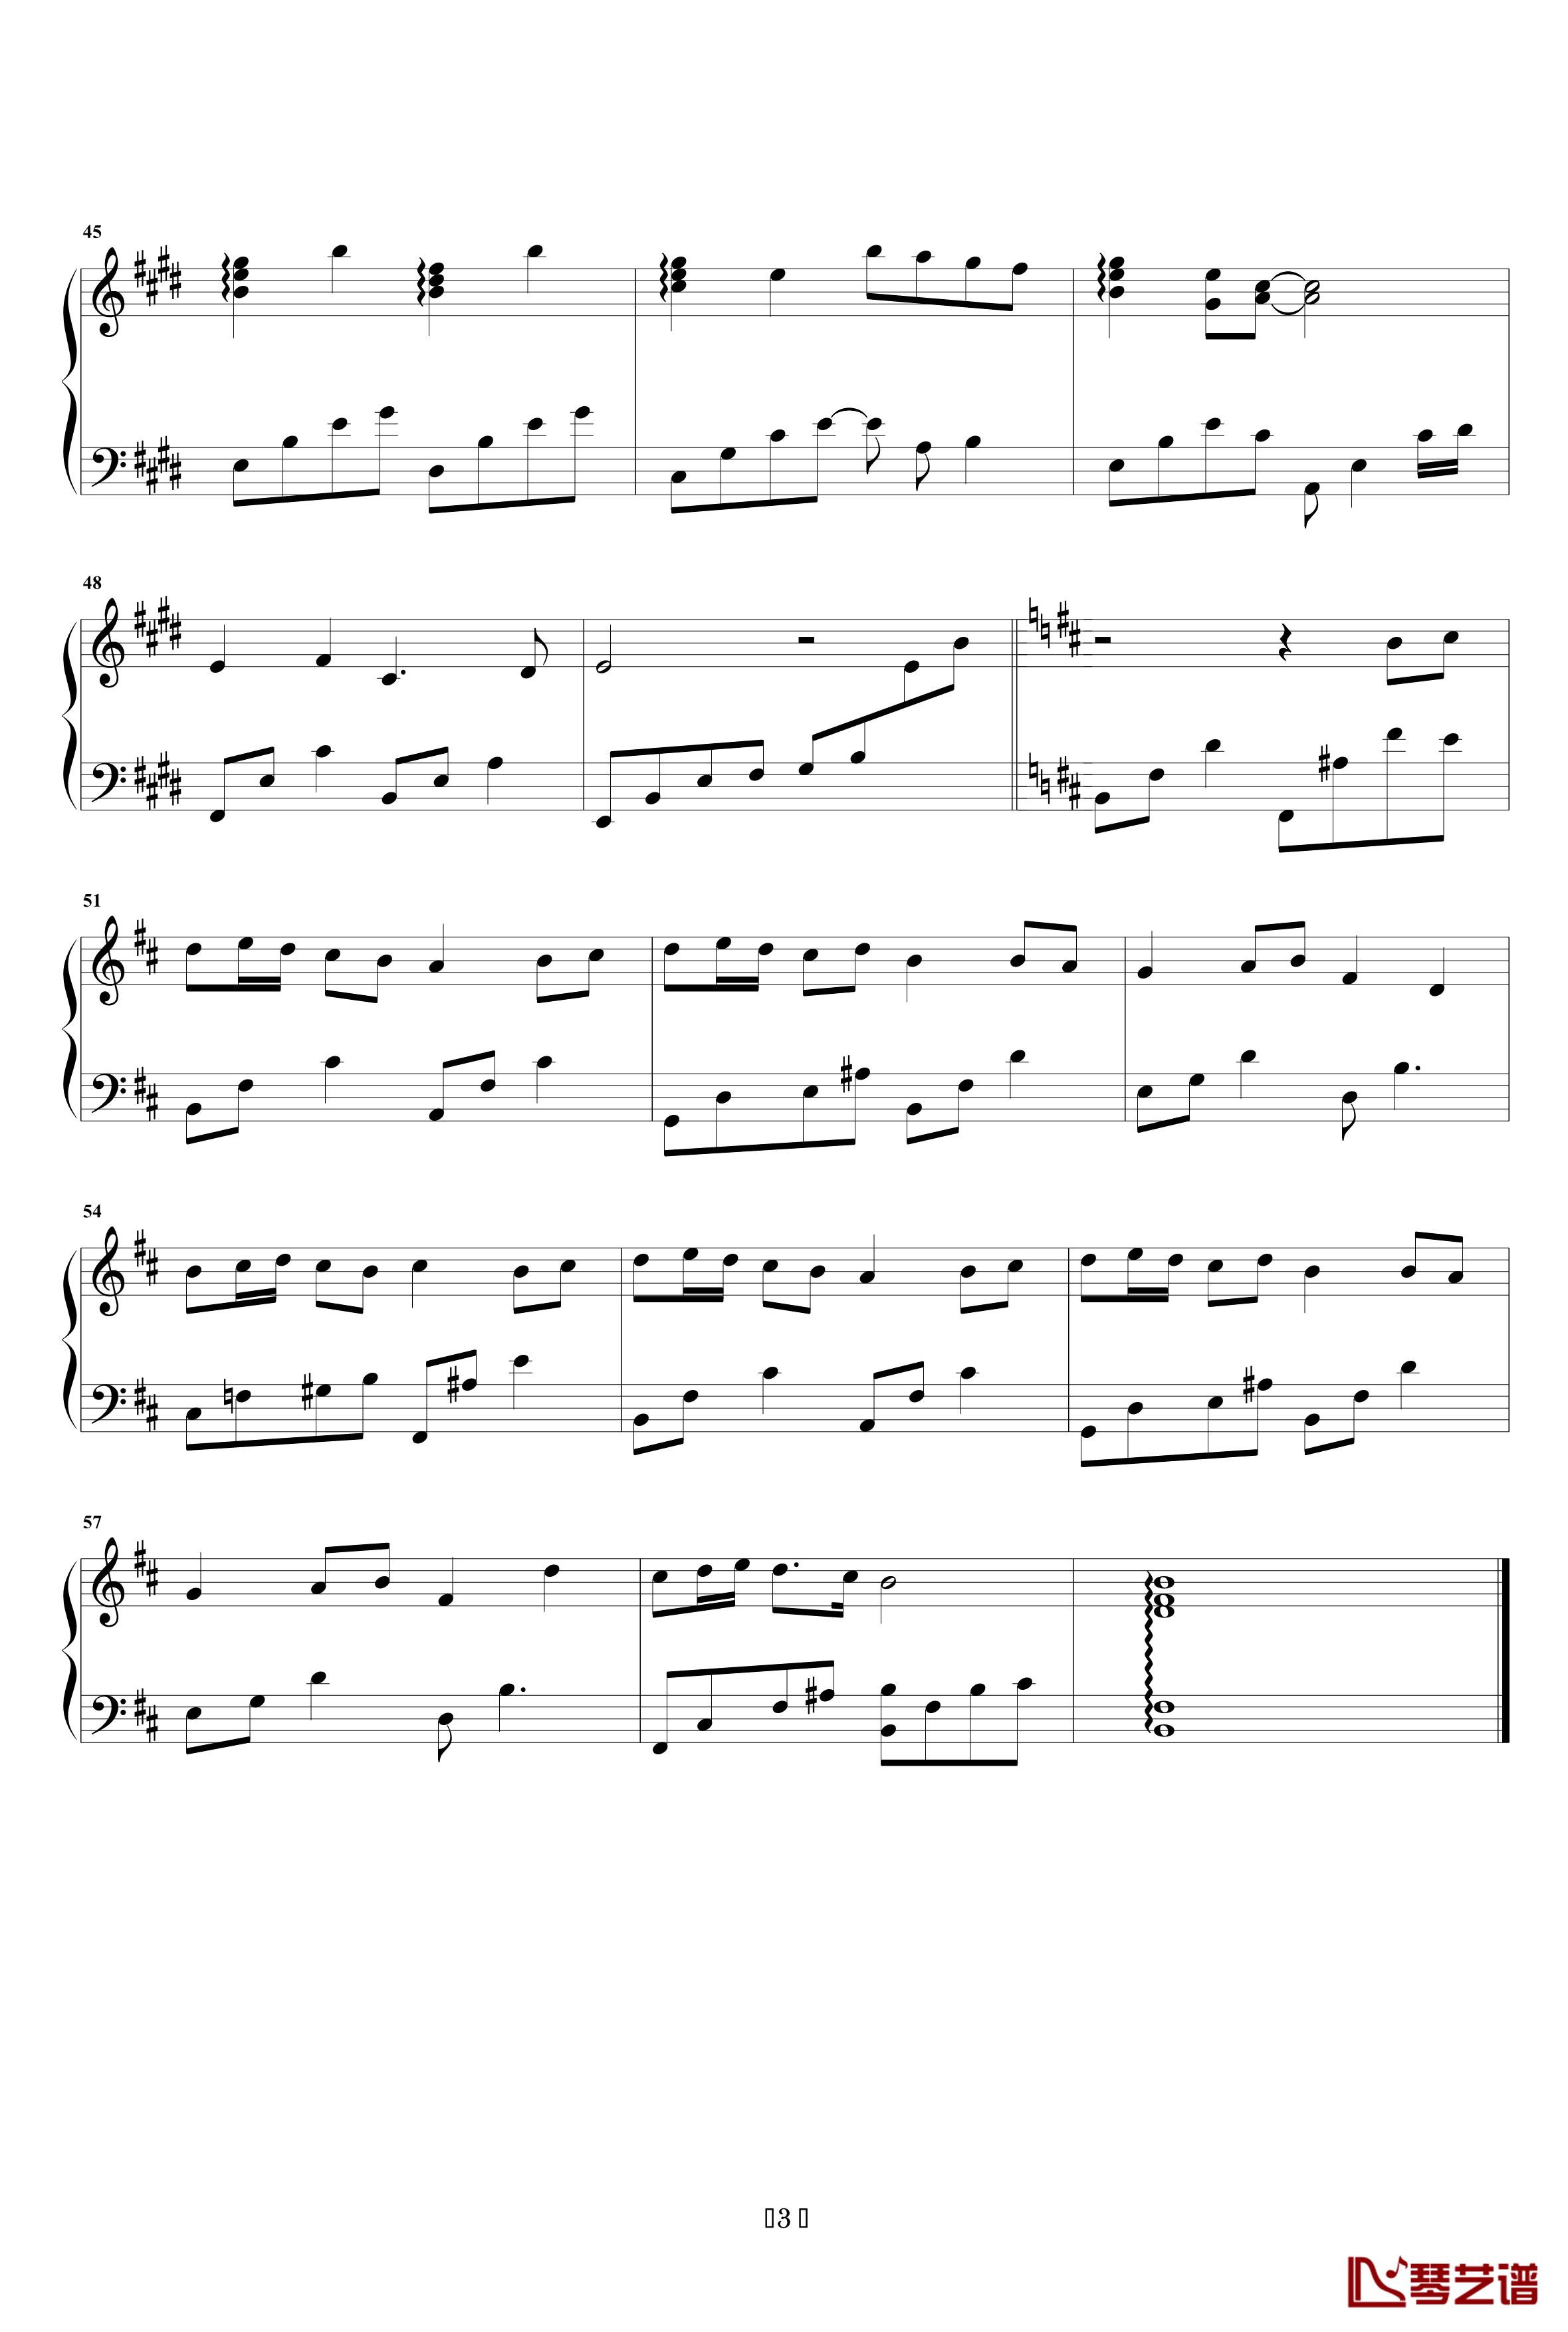 逝水童年钢琴谱-O.H.3